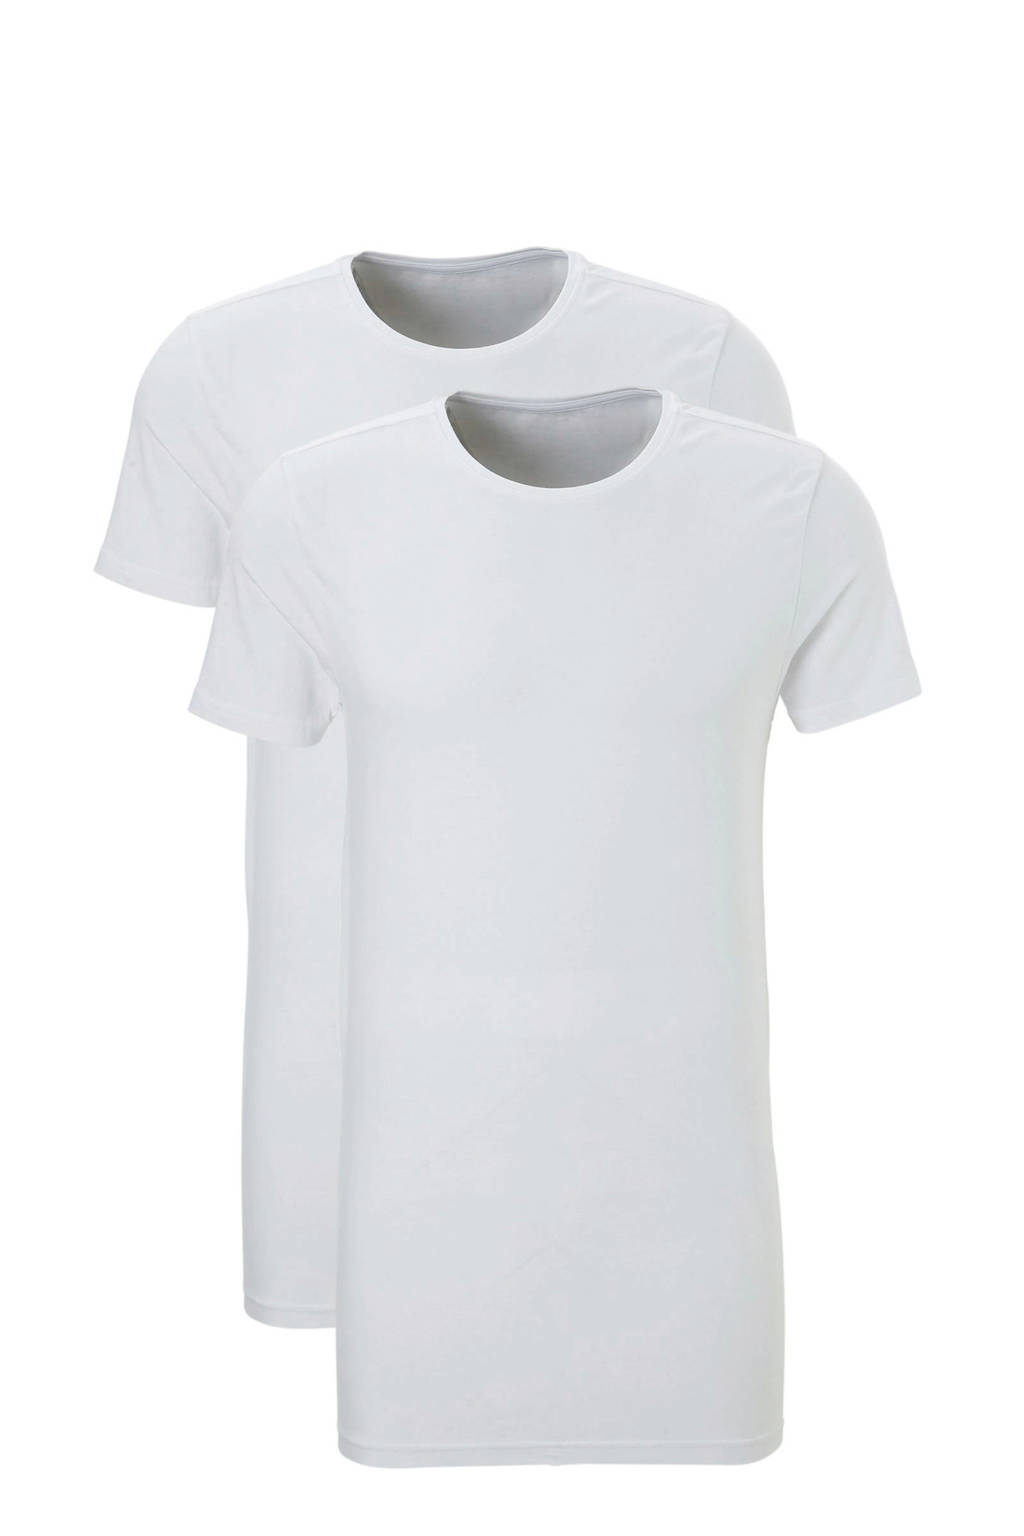 ten Cate extra lang slimfit T-shirt (set van 2) wit, Wit